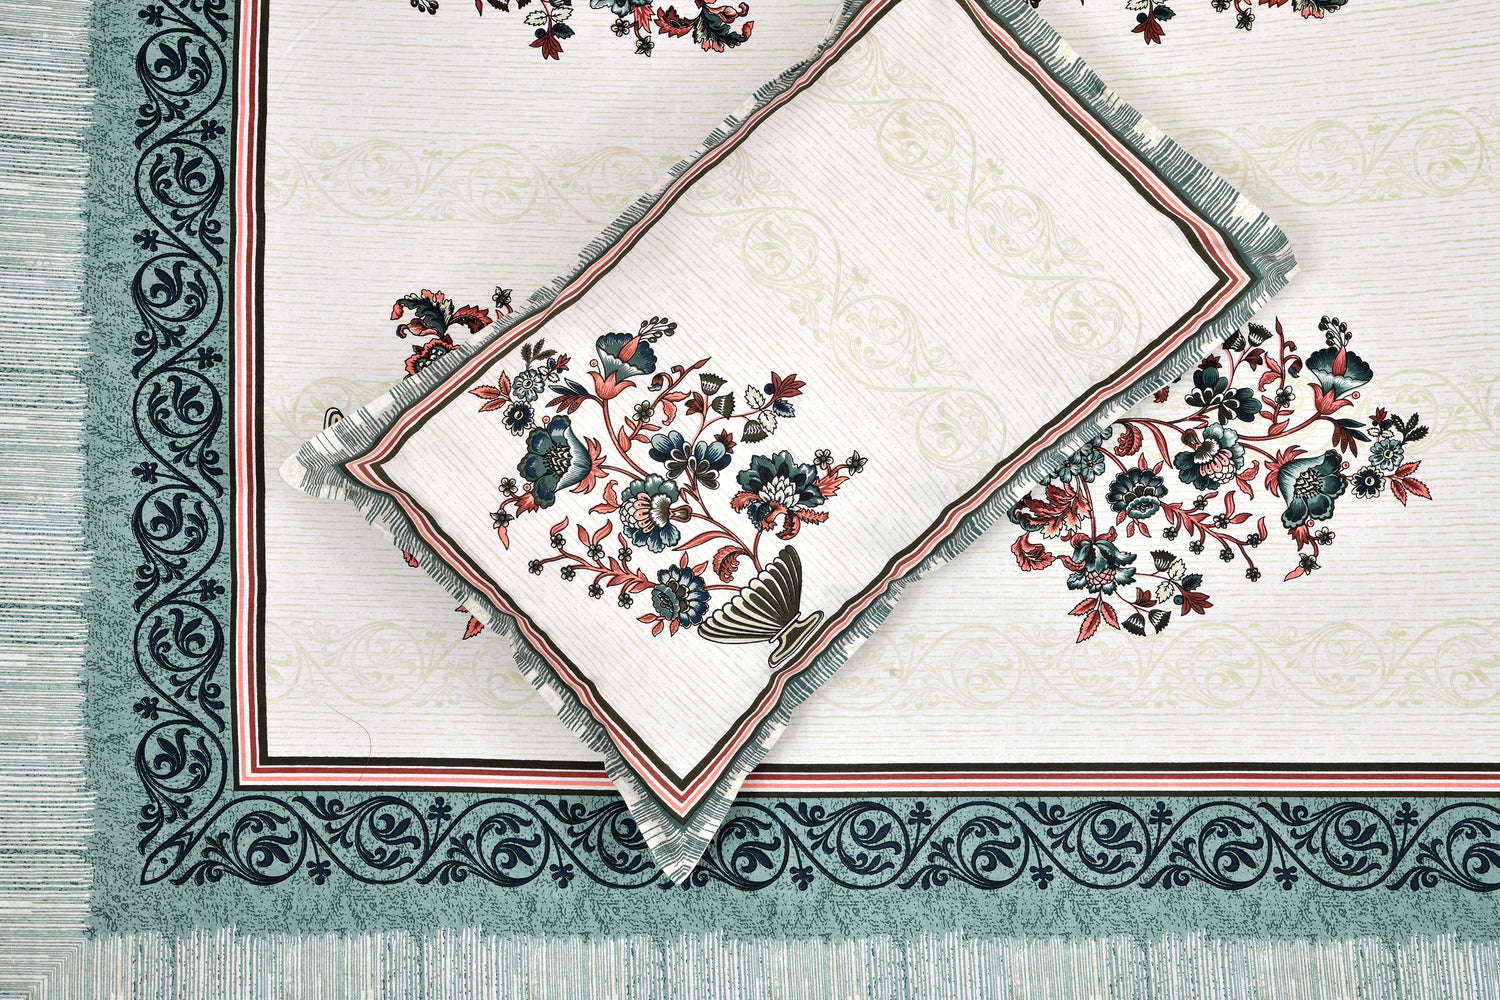 Ethnic Print Bedsheet-Double Bed-Flower Vase-Green